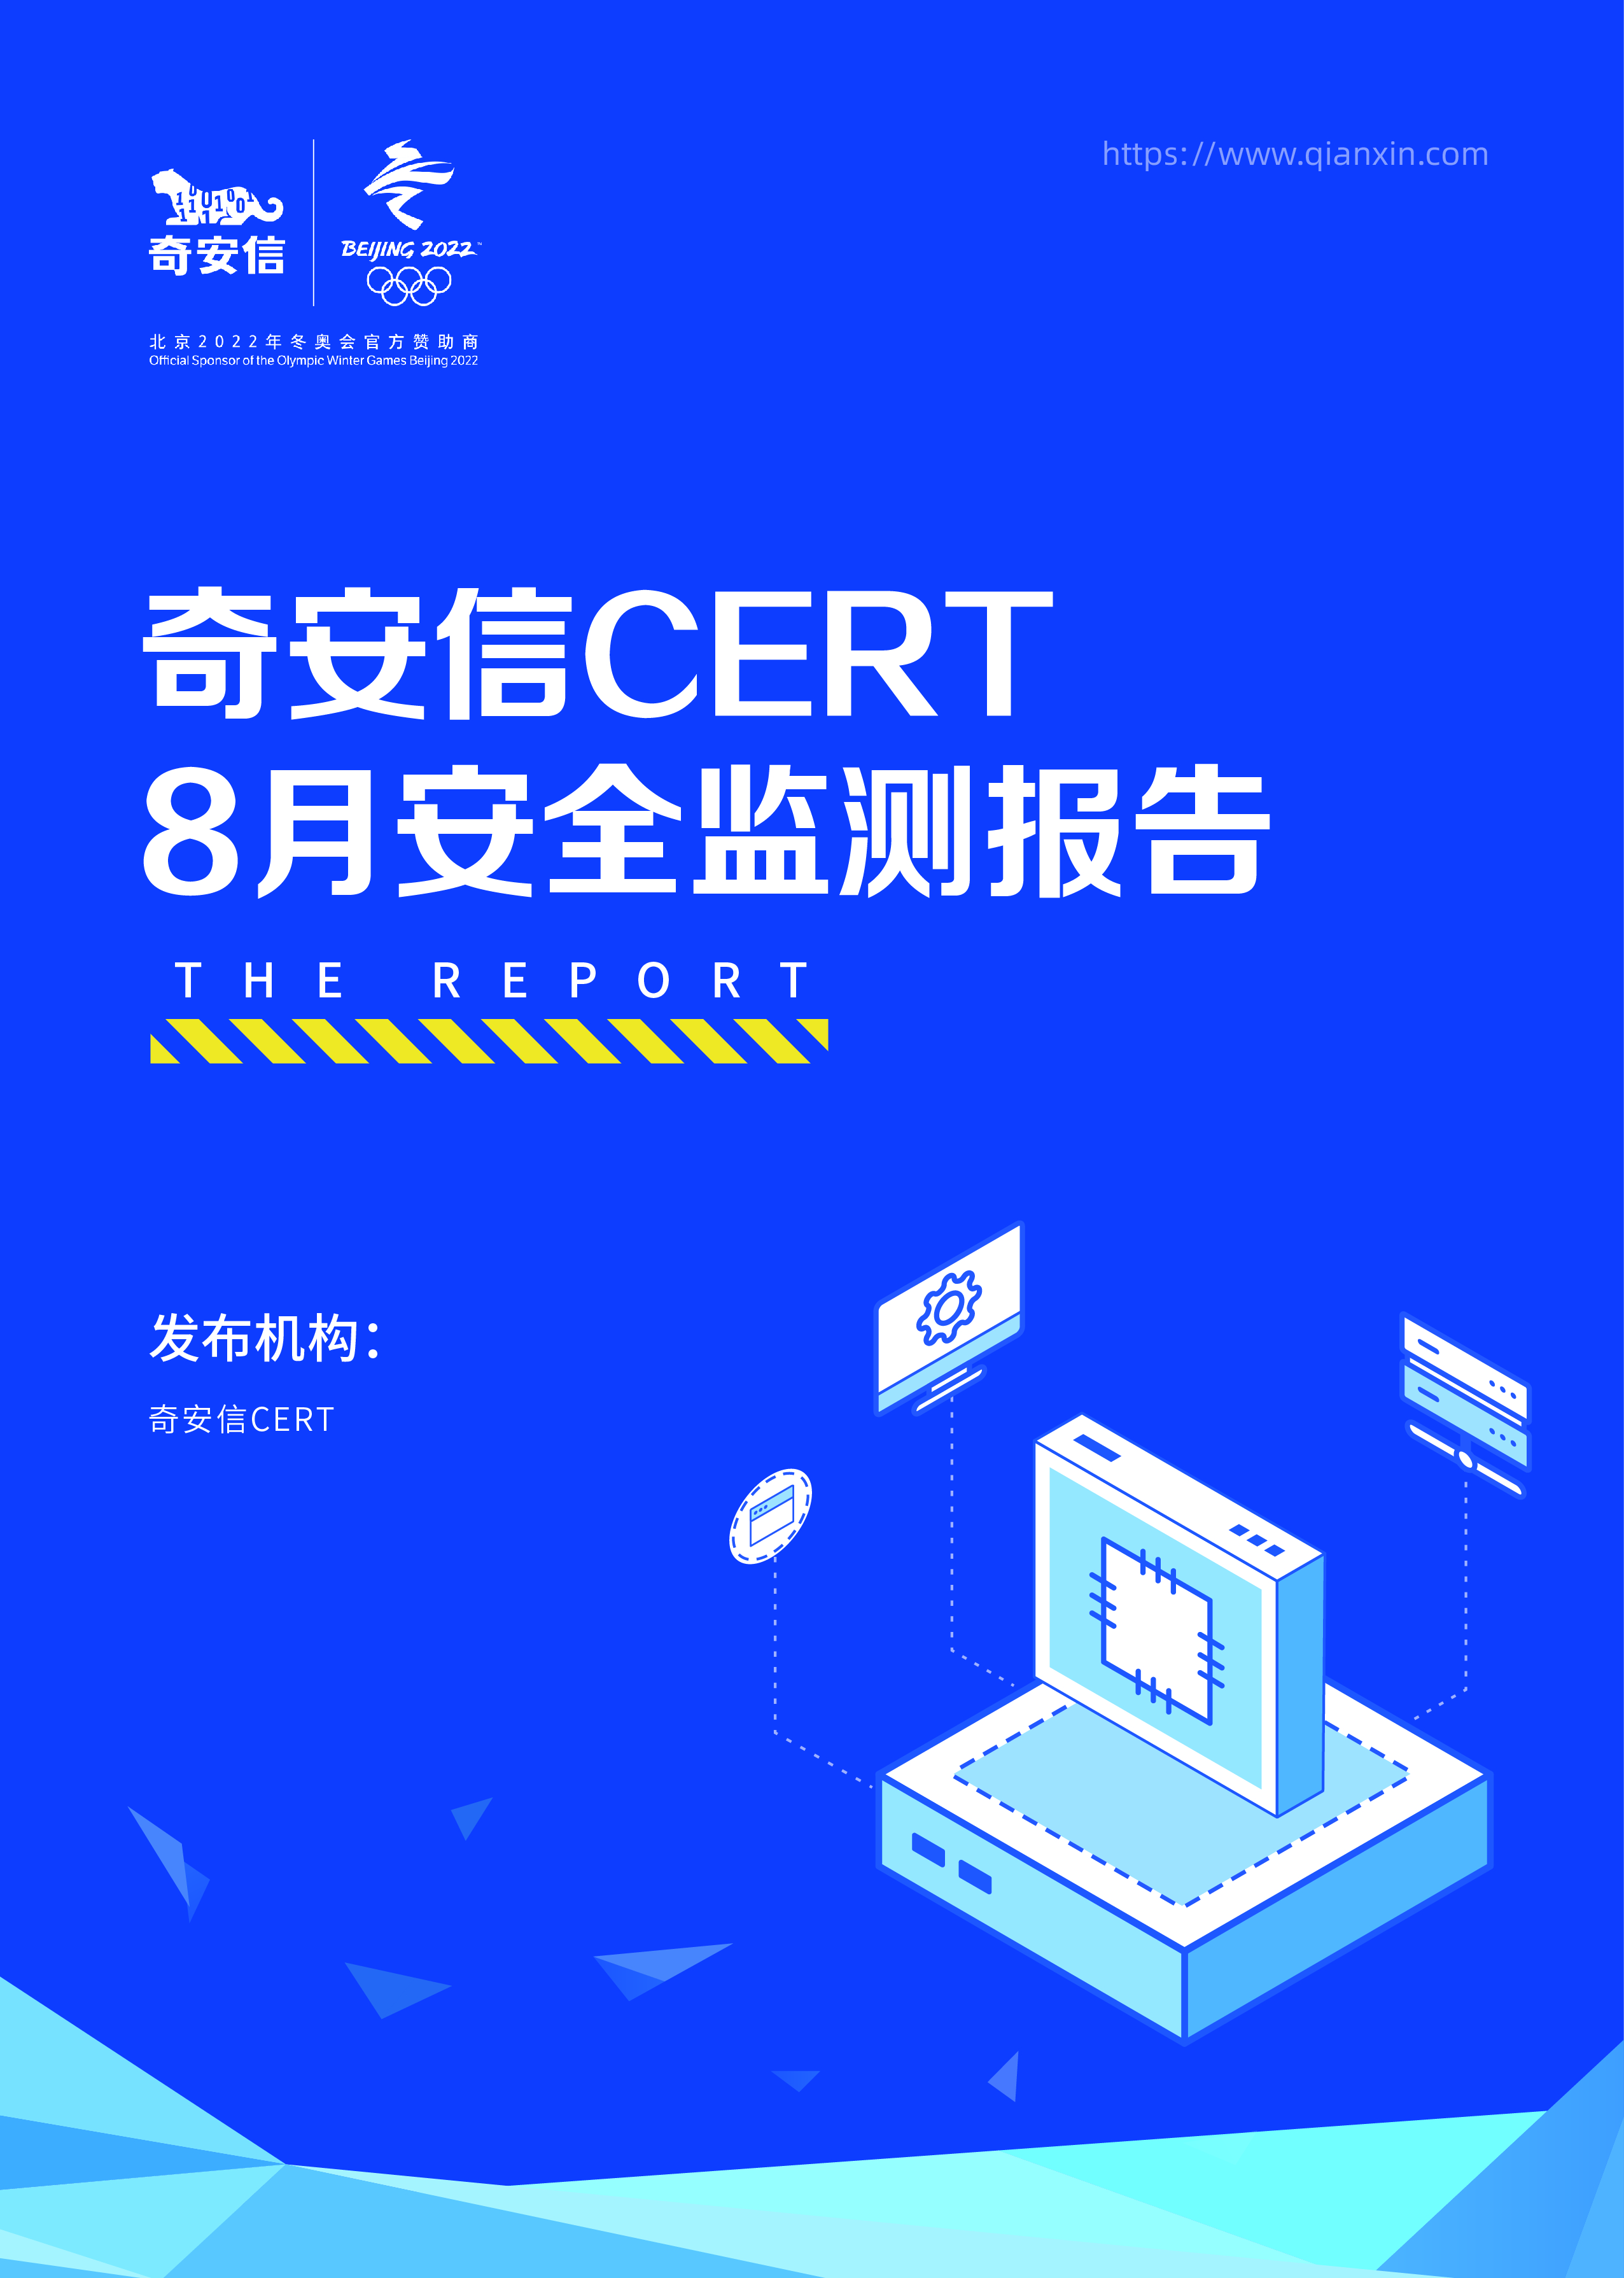 奇安信 CERT 8月安全监测报告